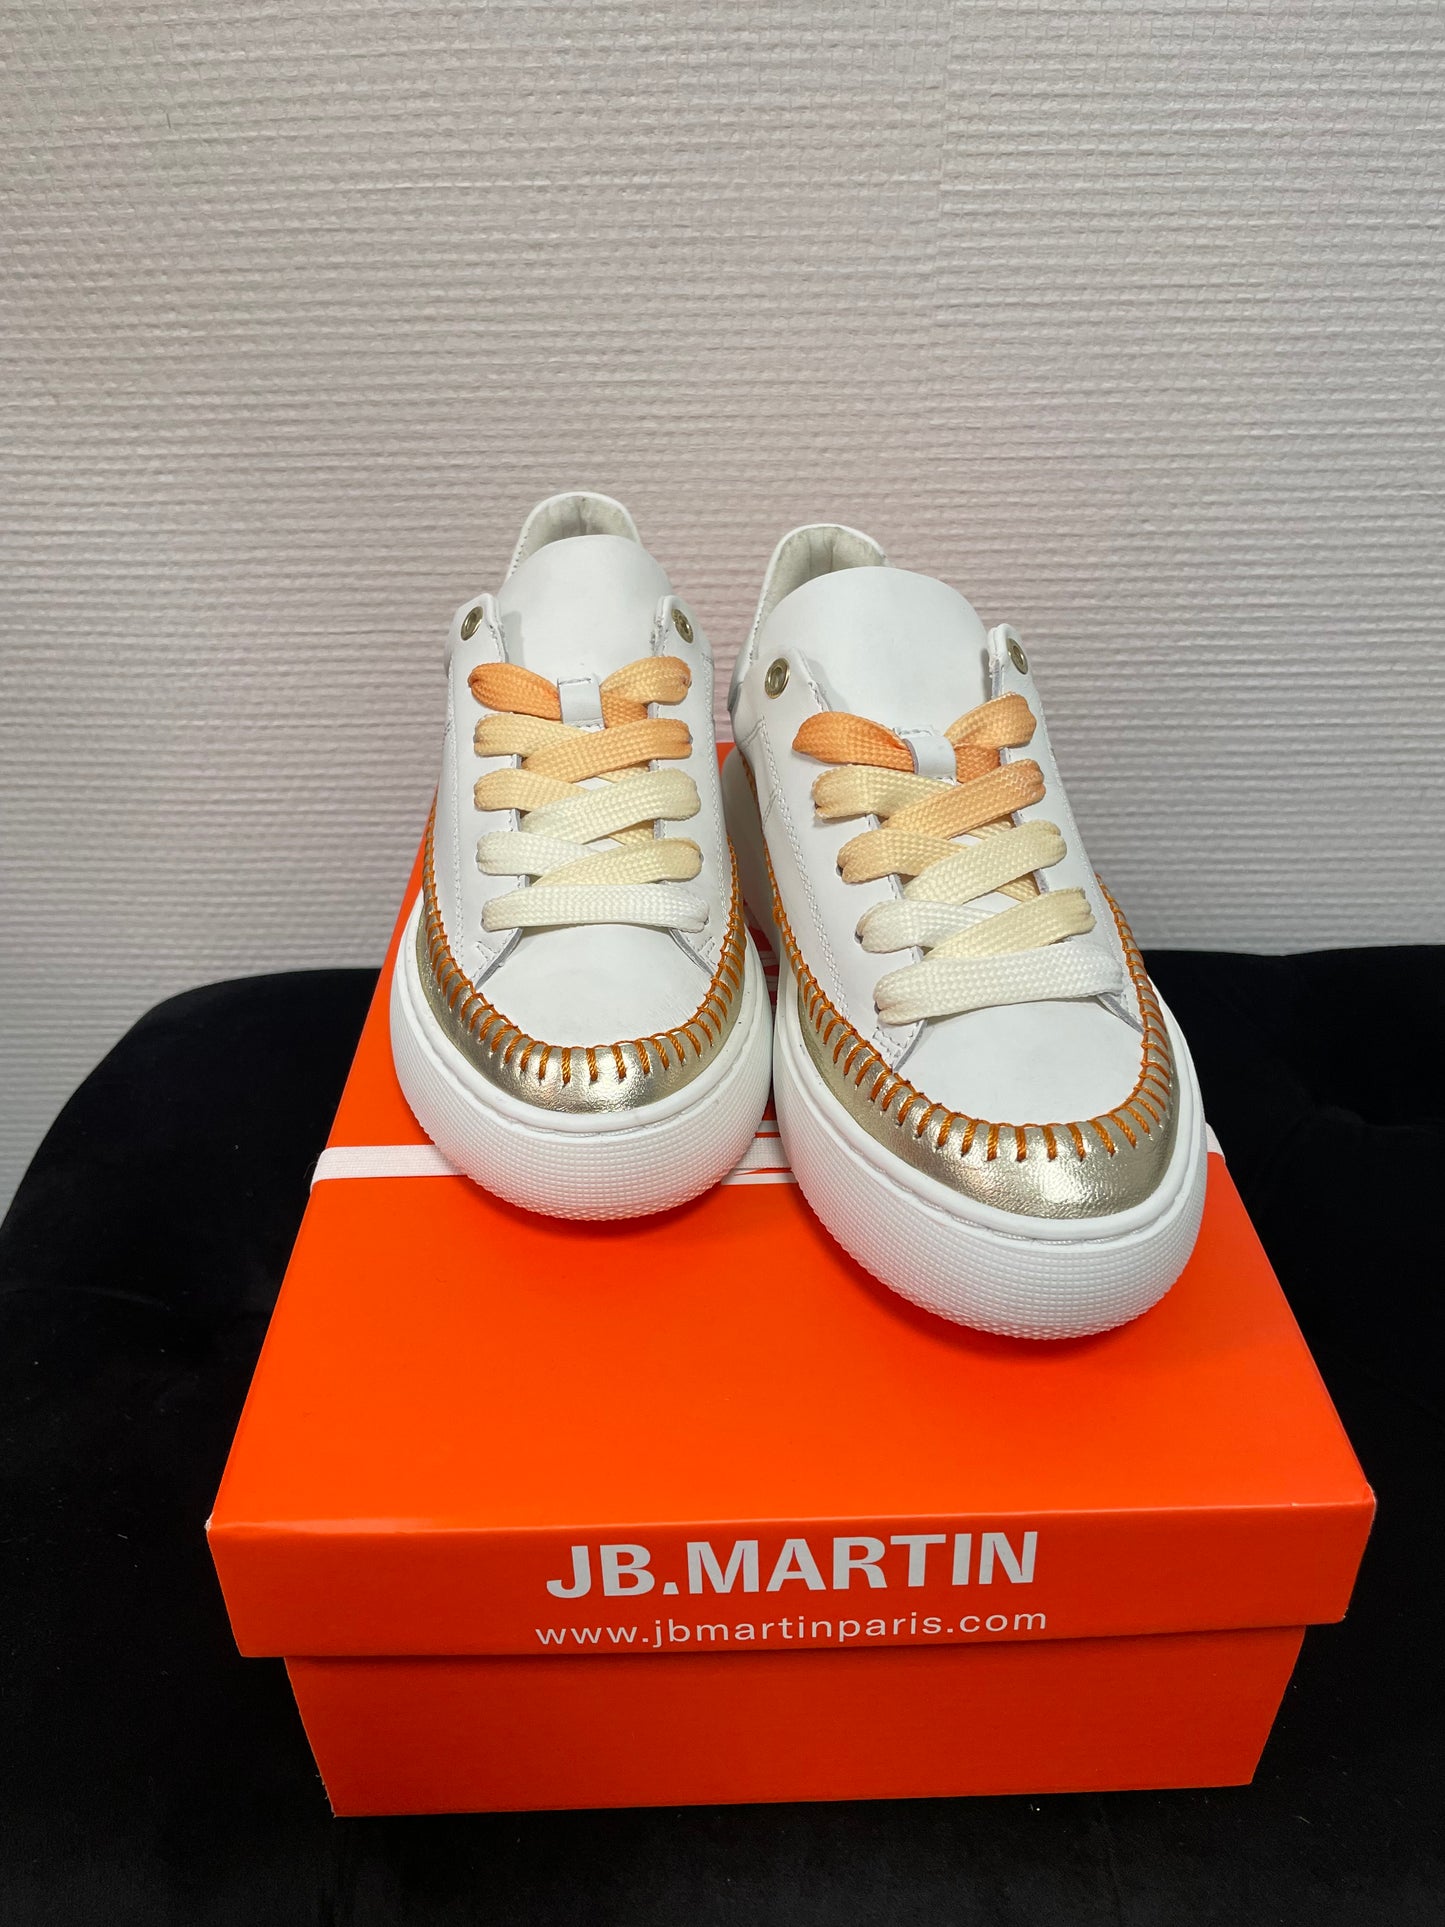 JB.MARTIN Flower Sneakers